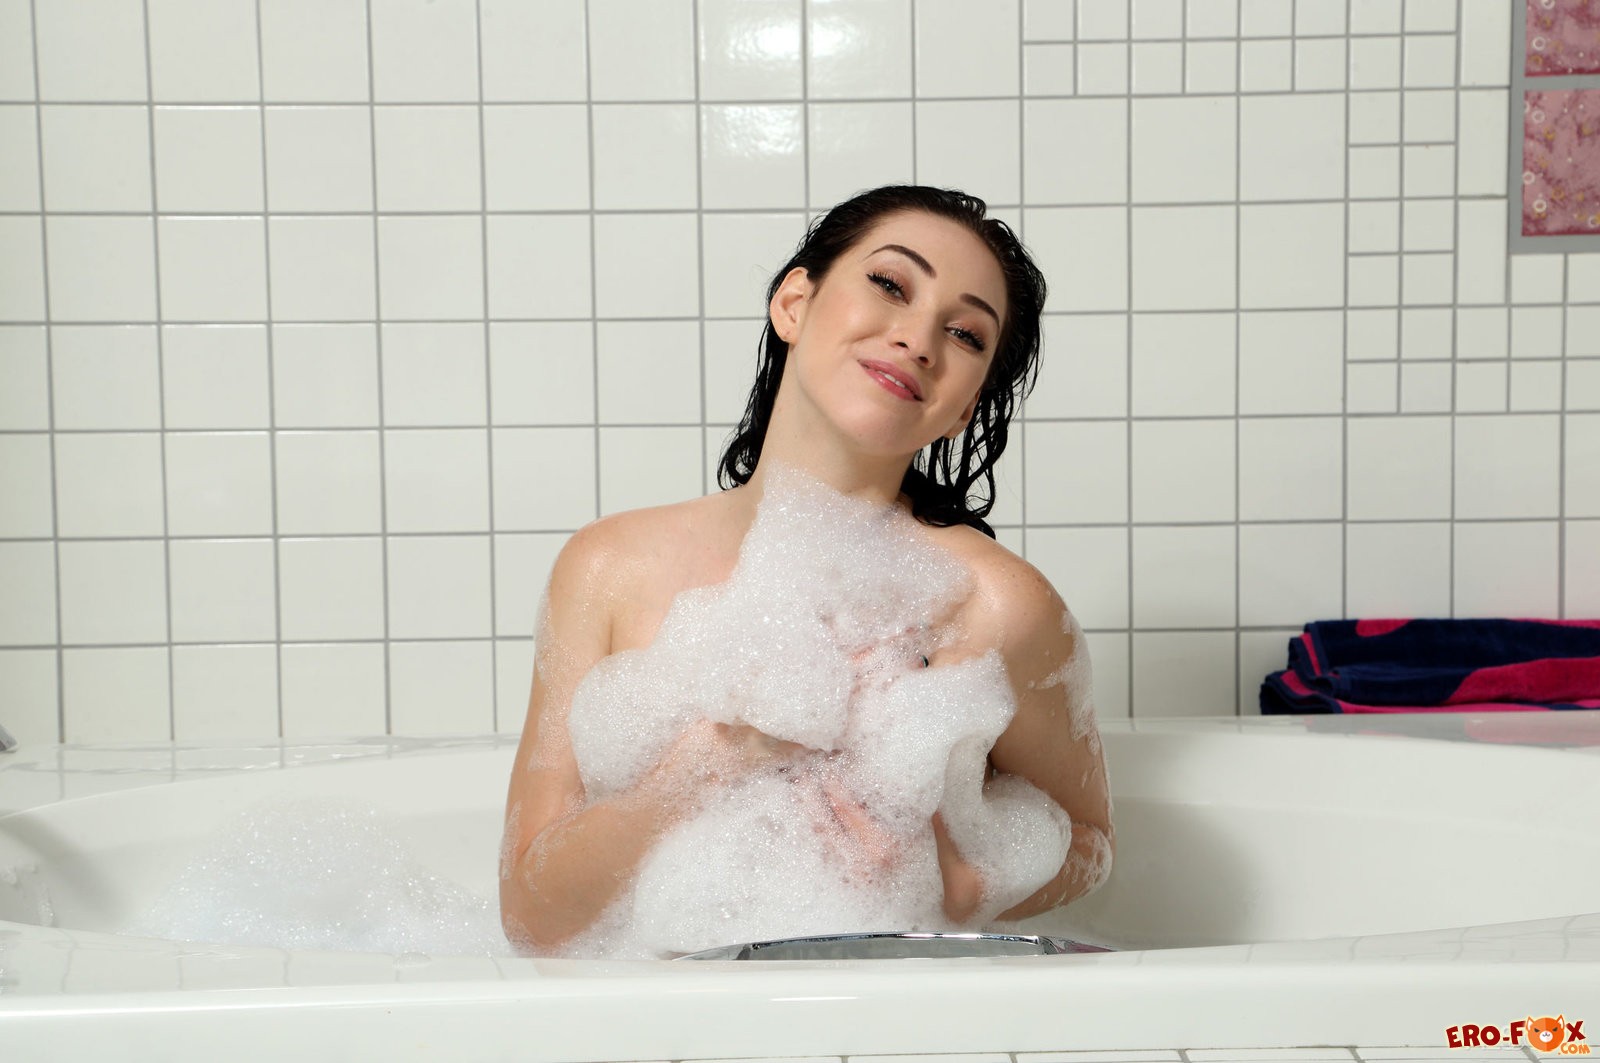 Голая попка девушки в ванной с пеной